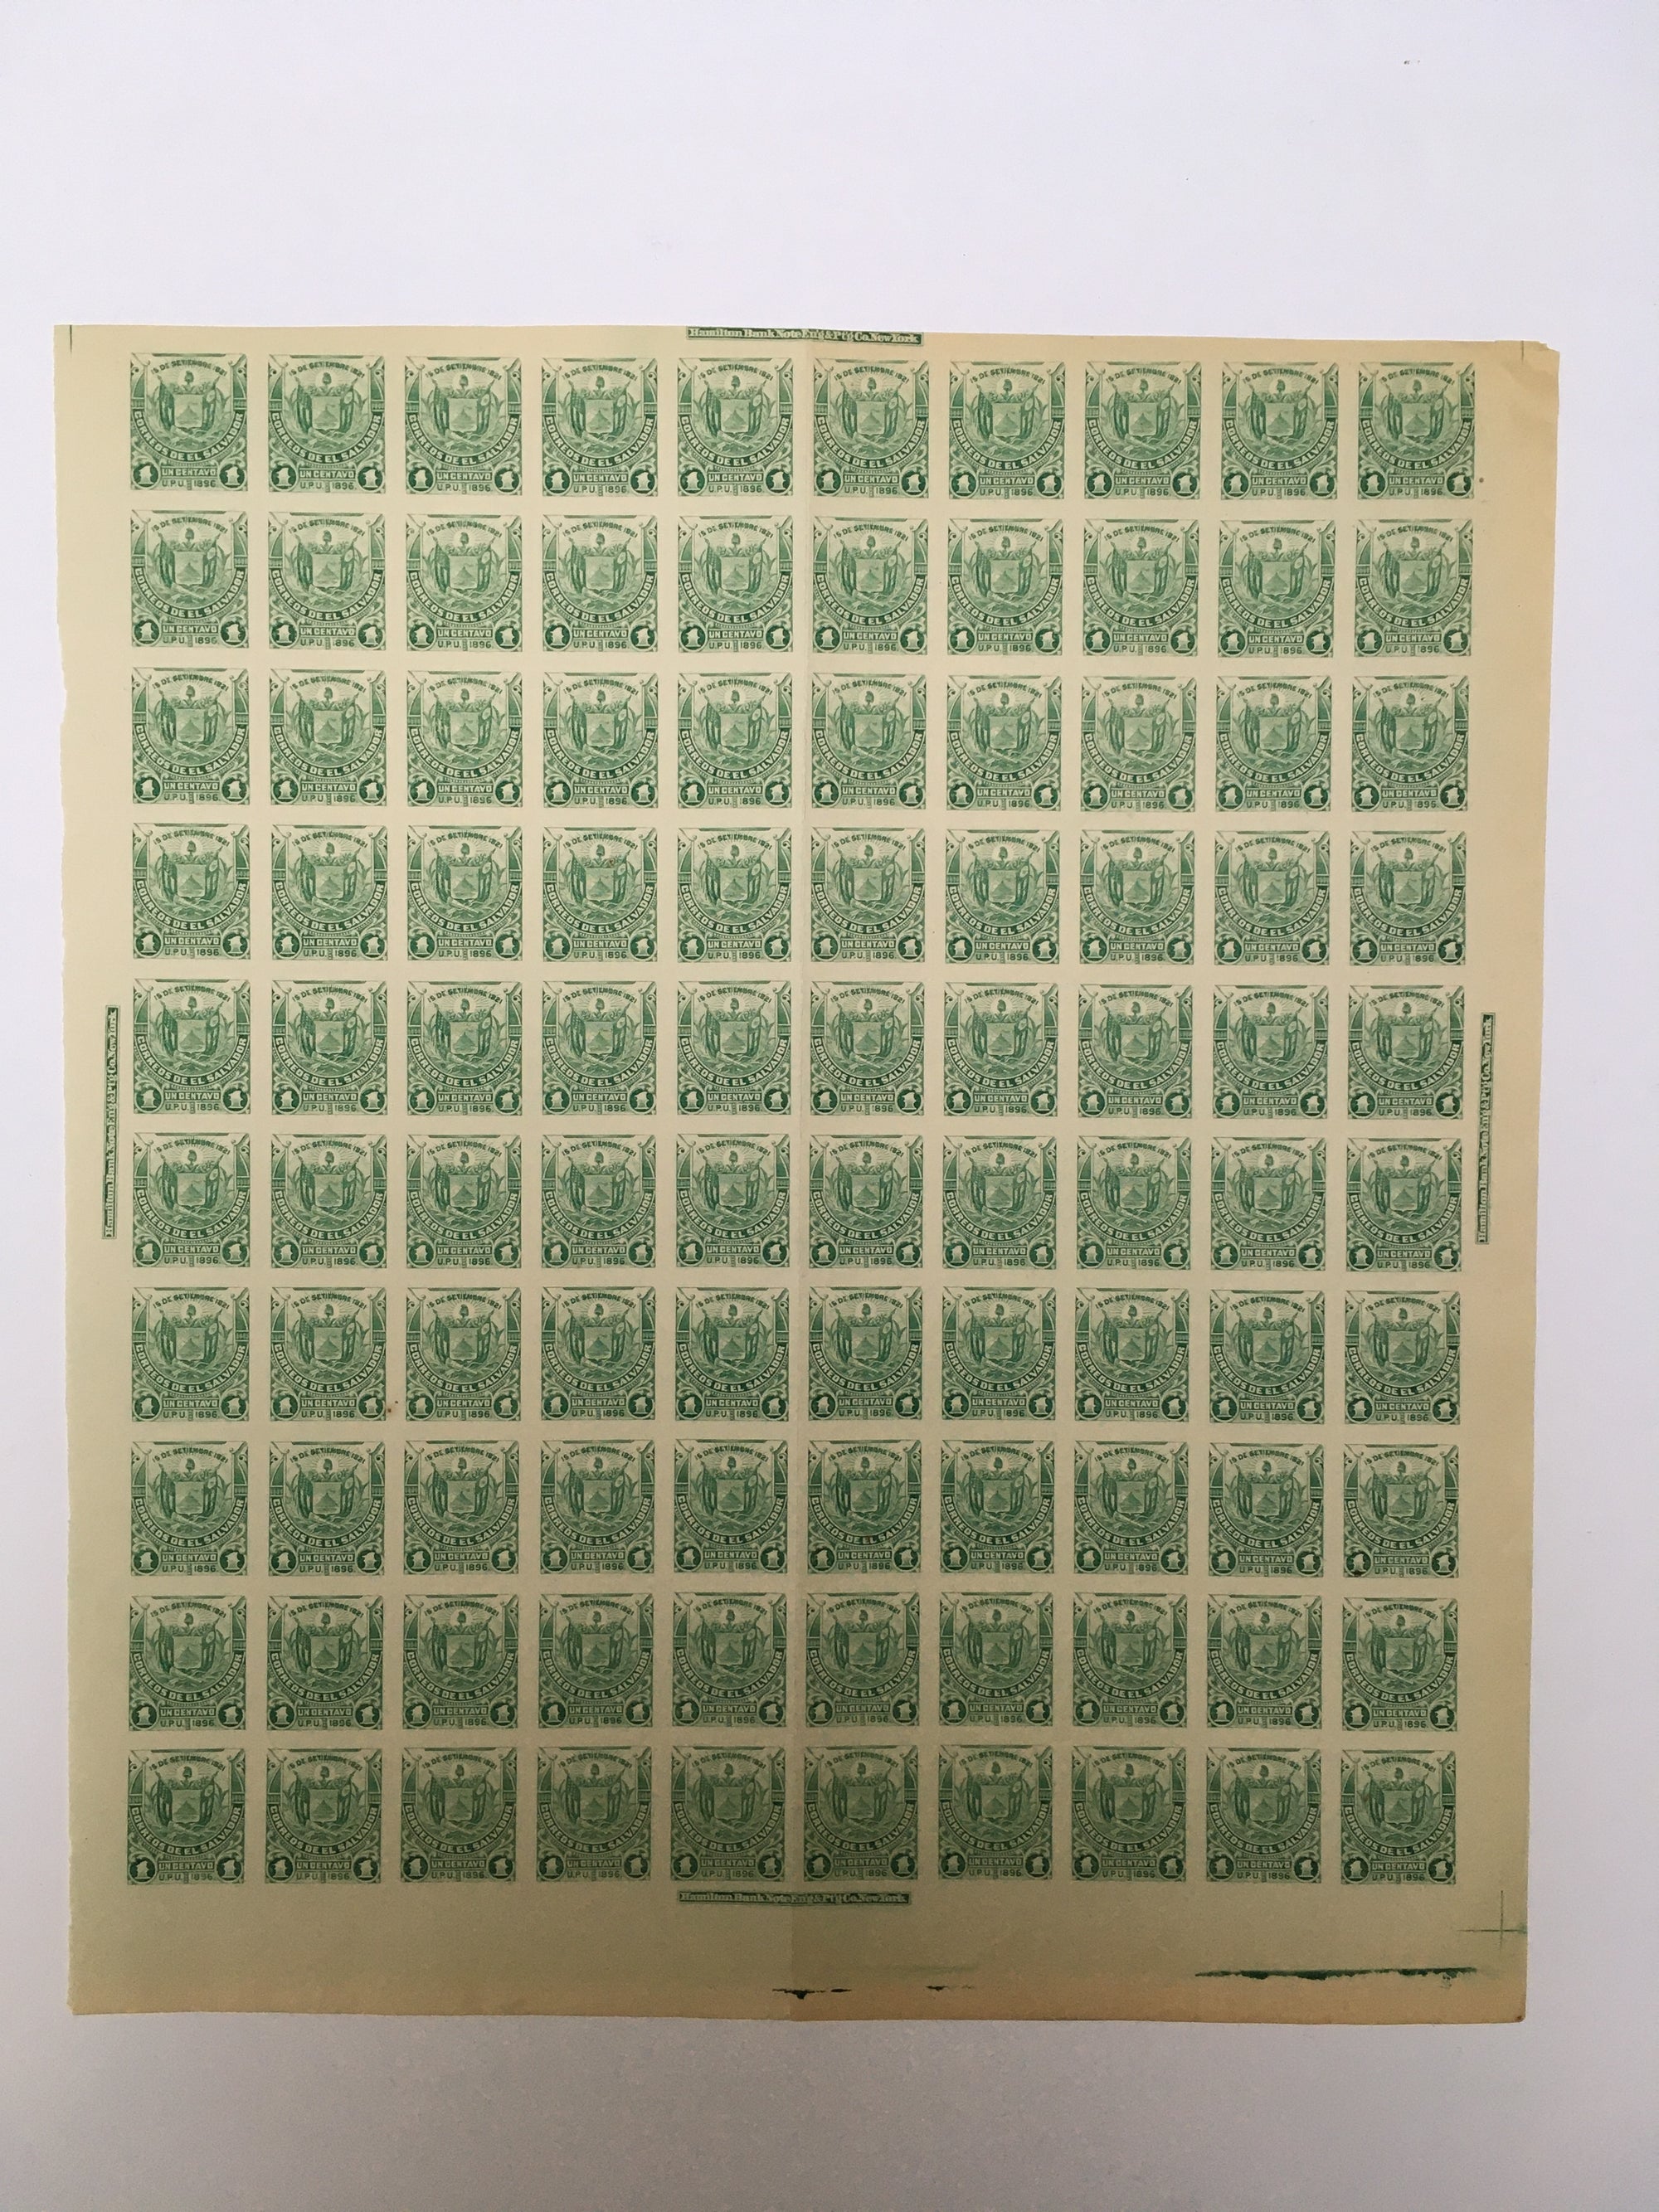 El Salvador 1896 1c Emerald Plate Proof Complete Sheet. Scott 157B var